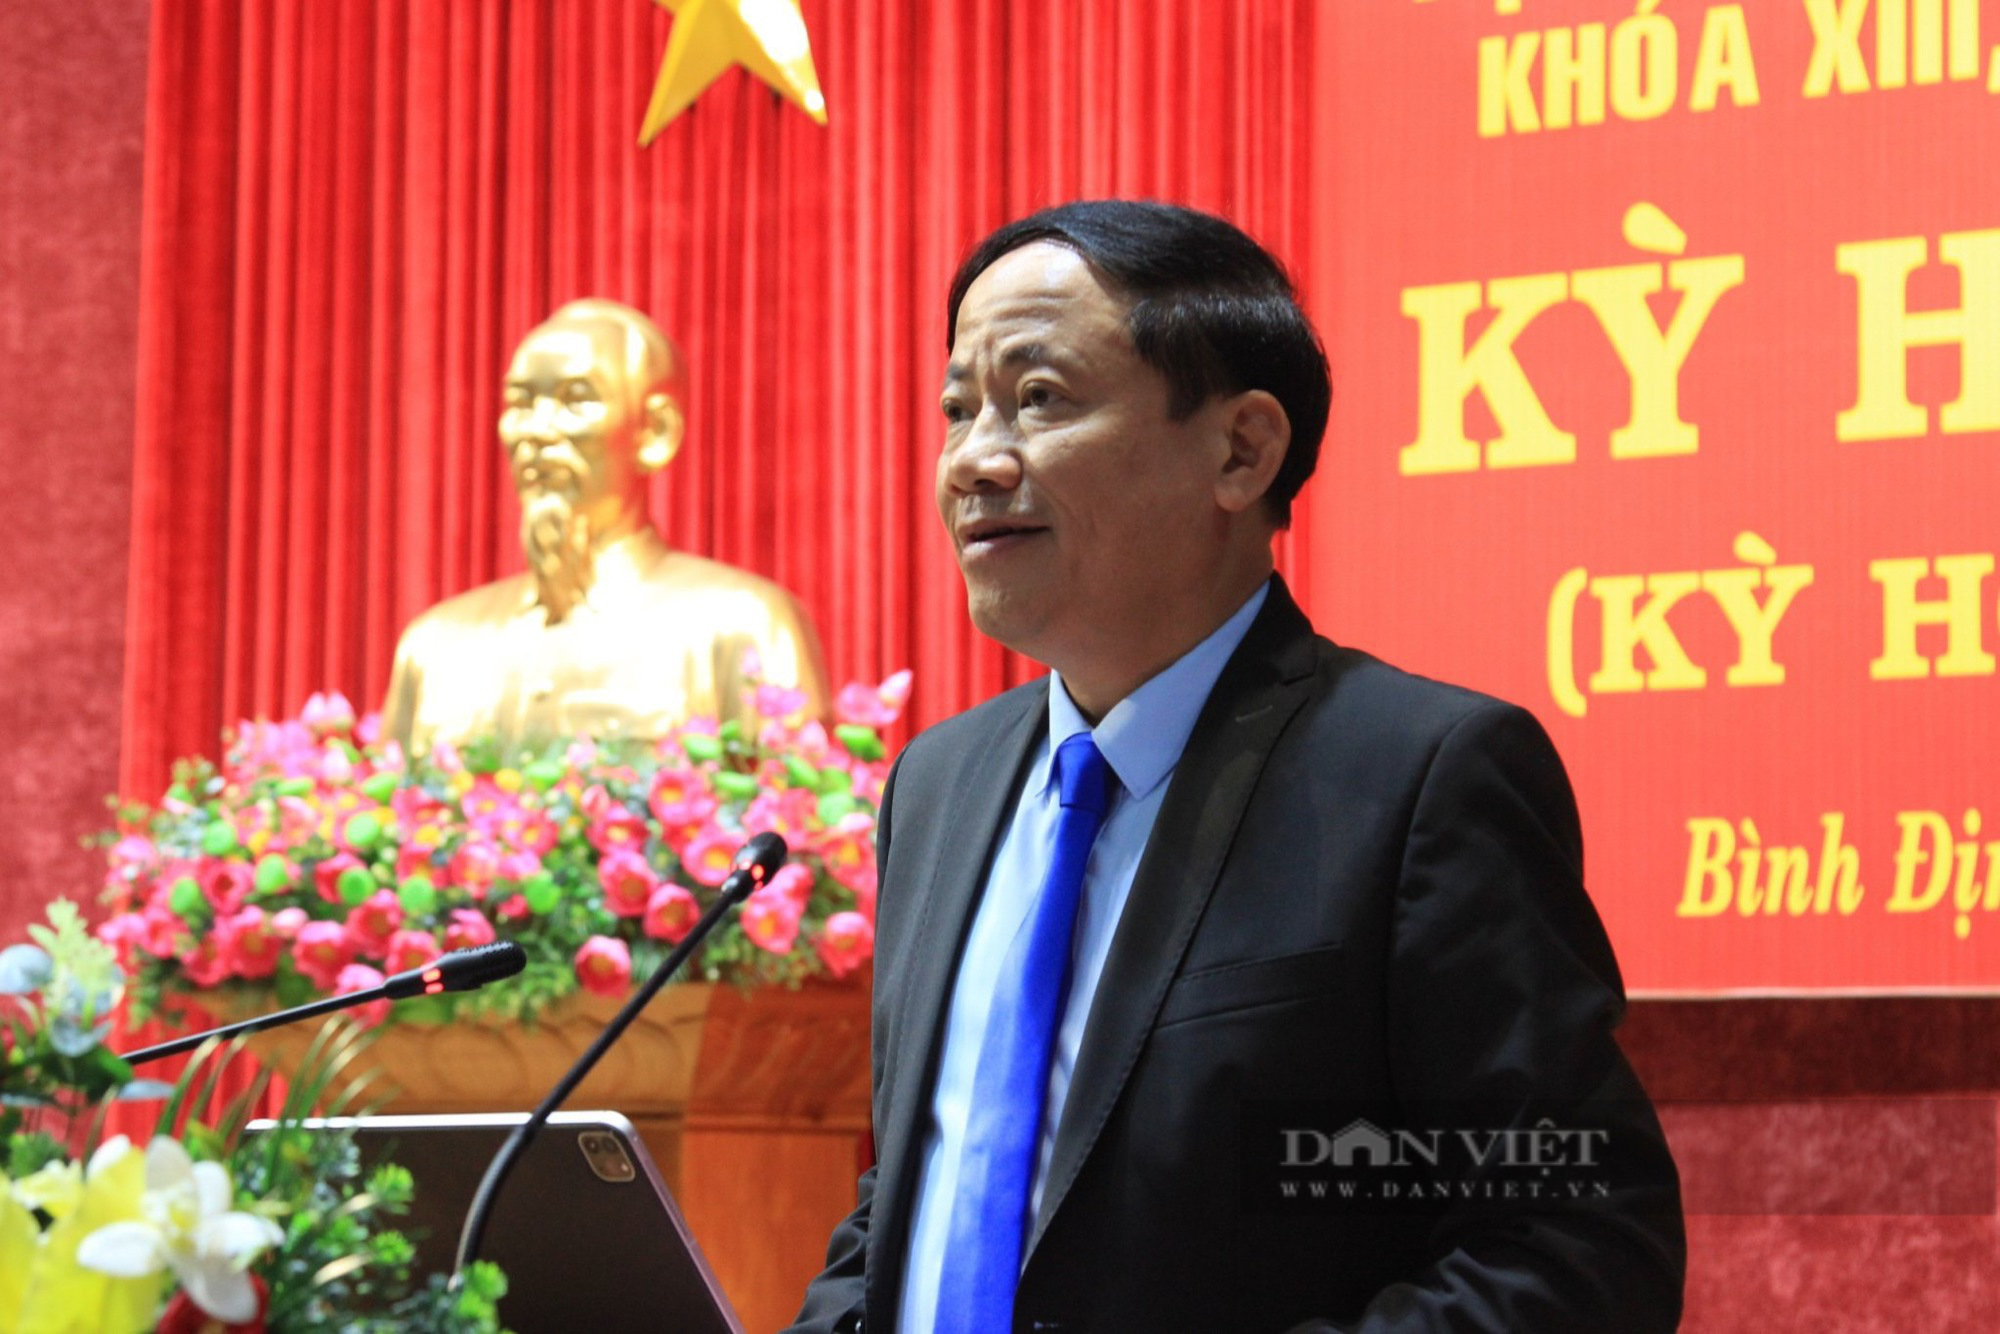 Nghị quyết HĐND tỉnh Bình Định ban hành 4 năm, dự án gần 1,4km đường chưa thể thi công - Ảnh 3.